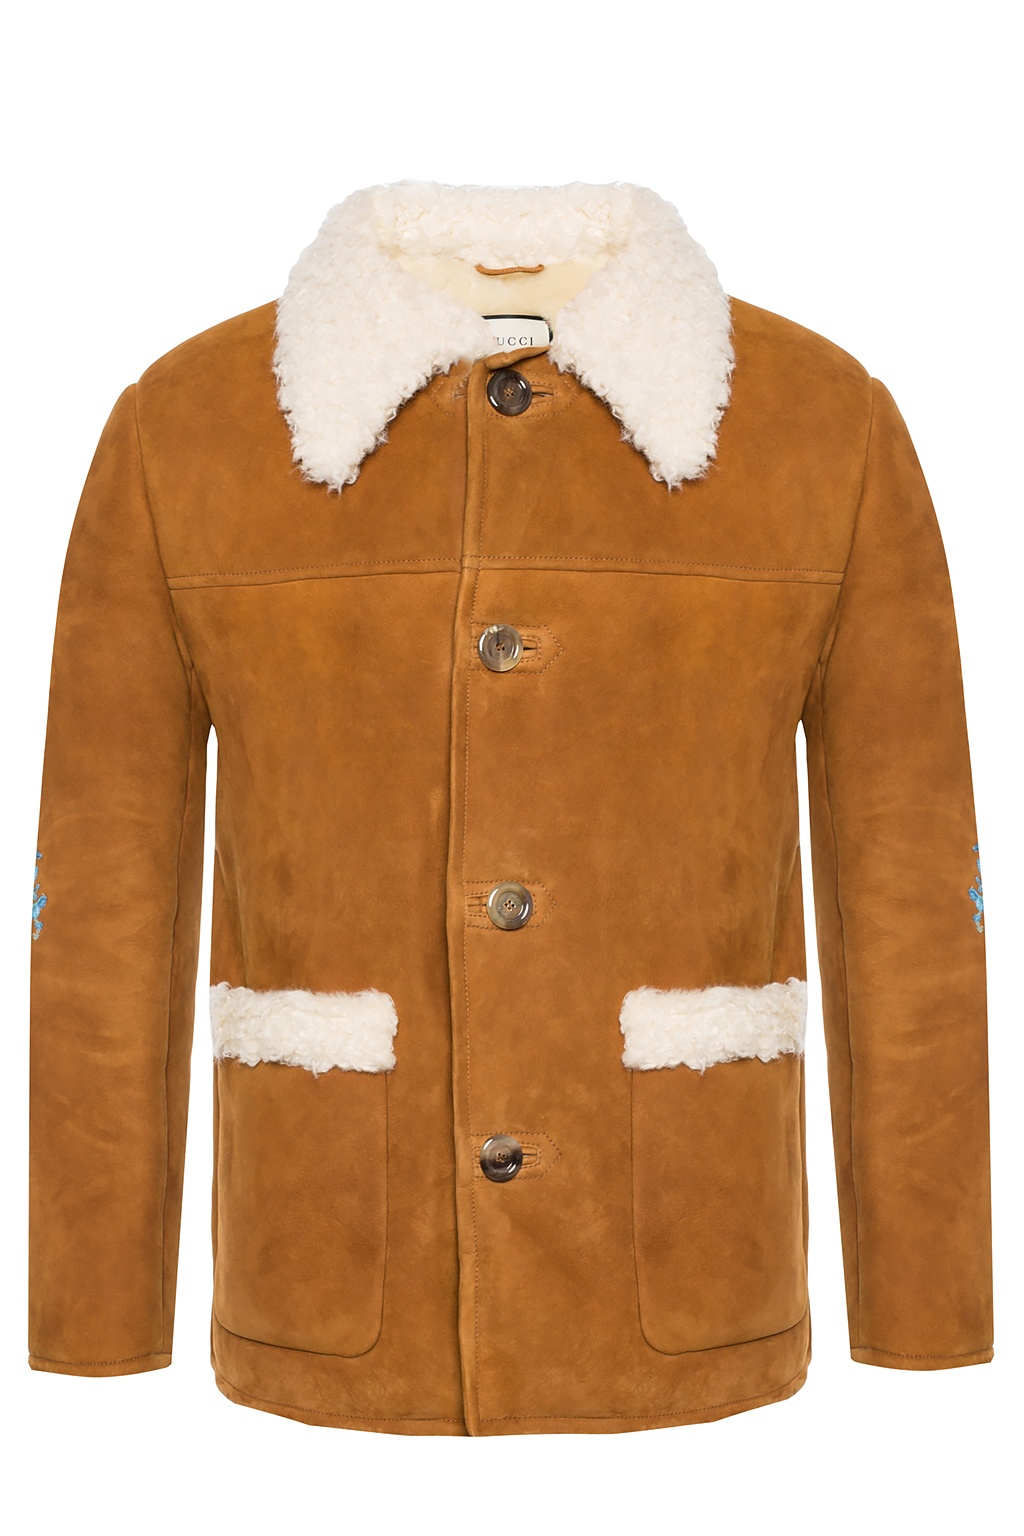 gucci shearling jacket